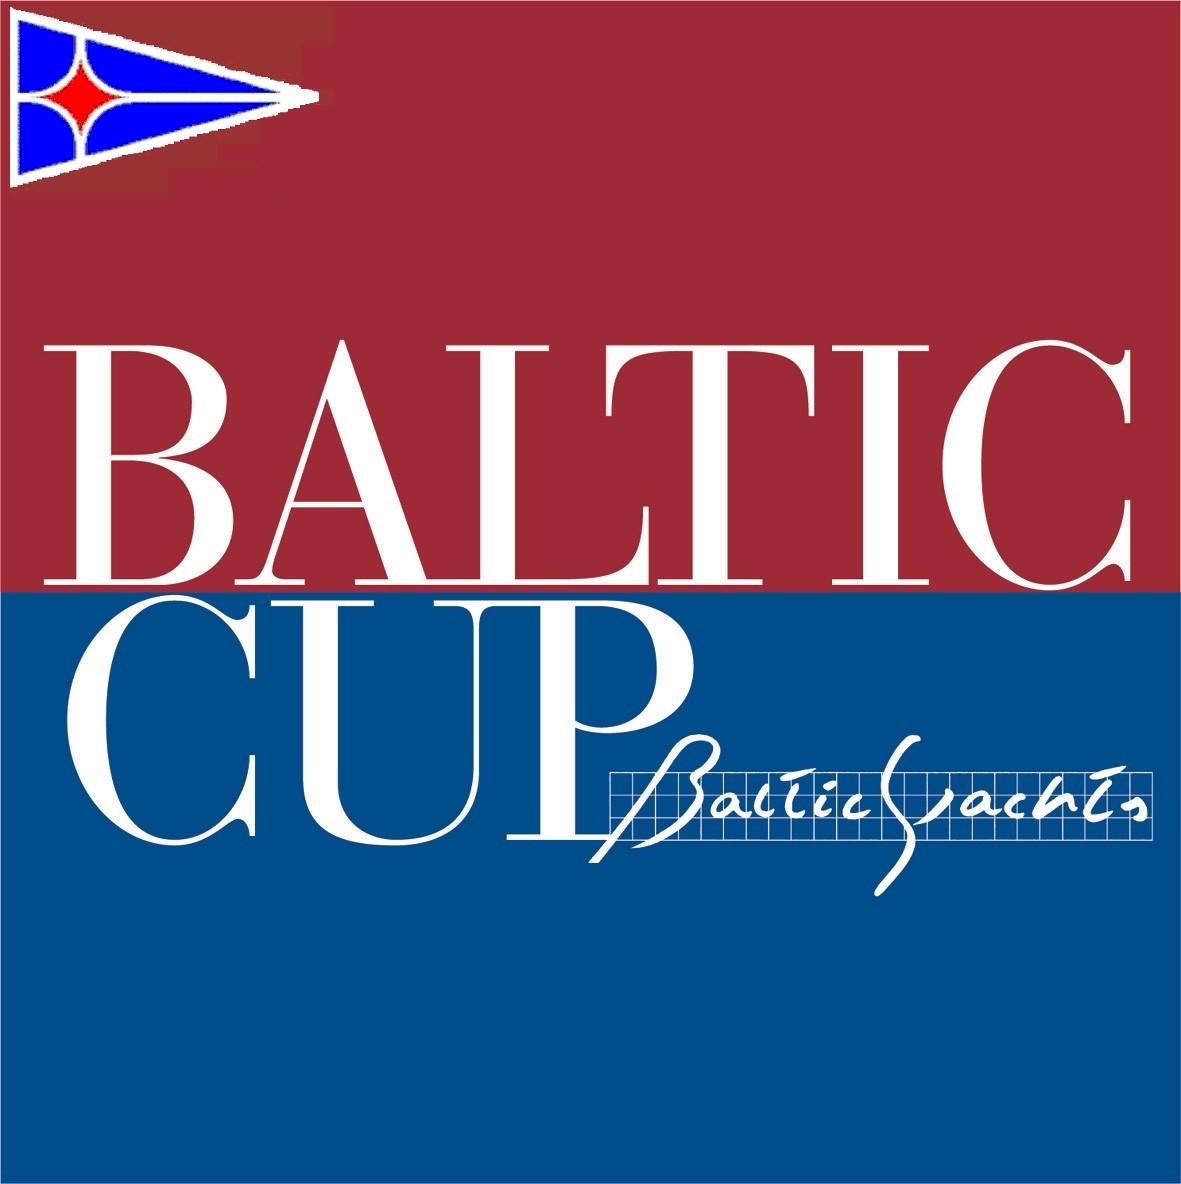 Baltic Cup - Le Regate - Yacht Club Costa Smeralda